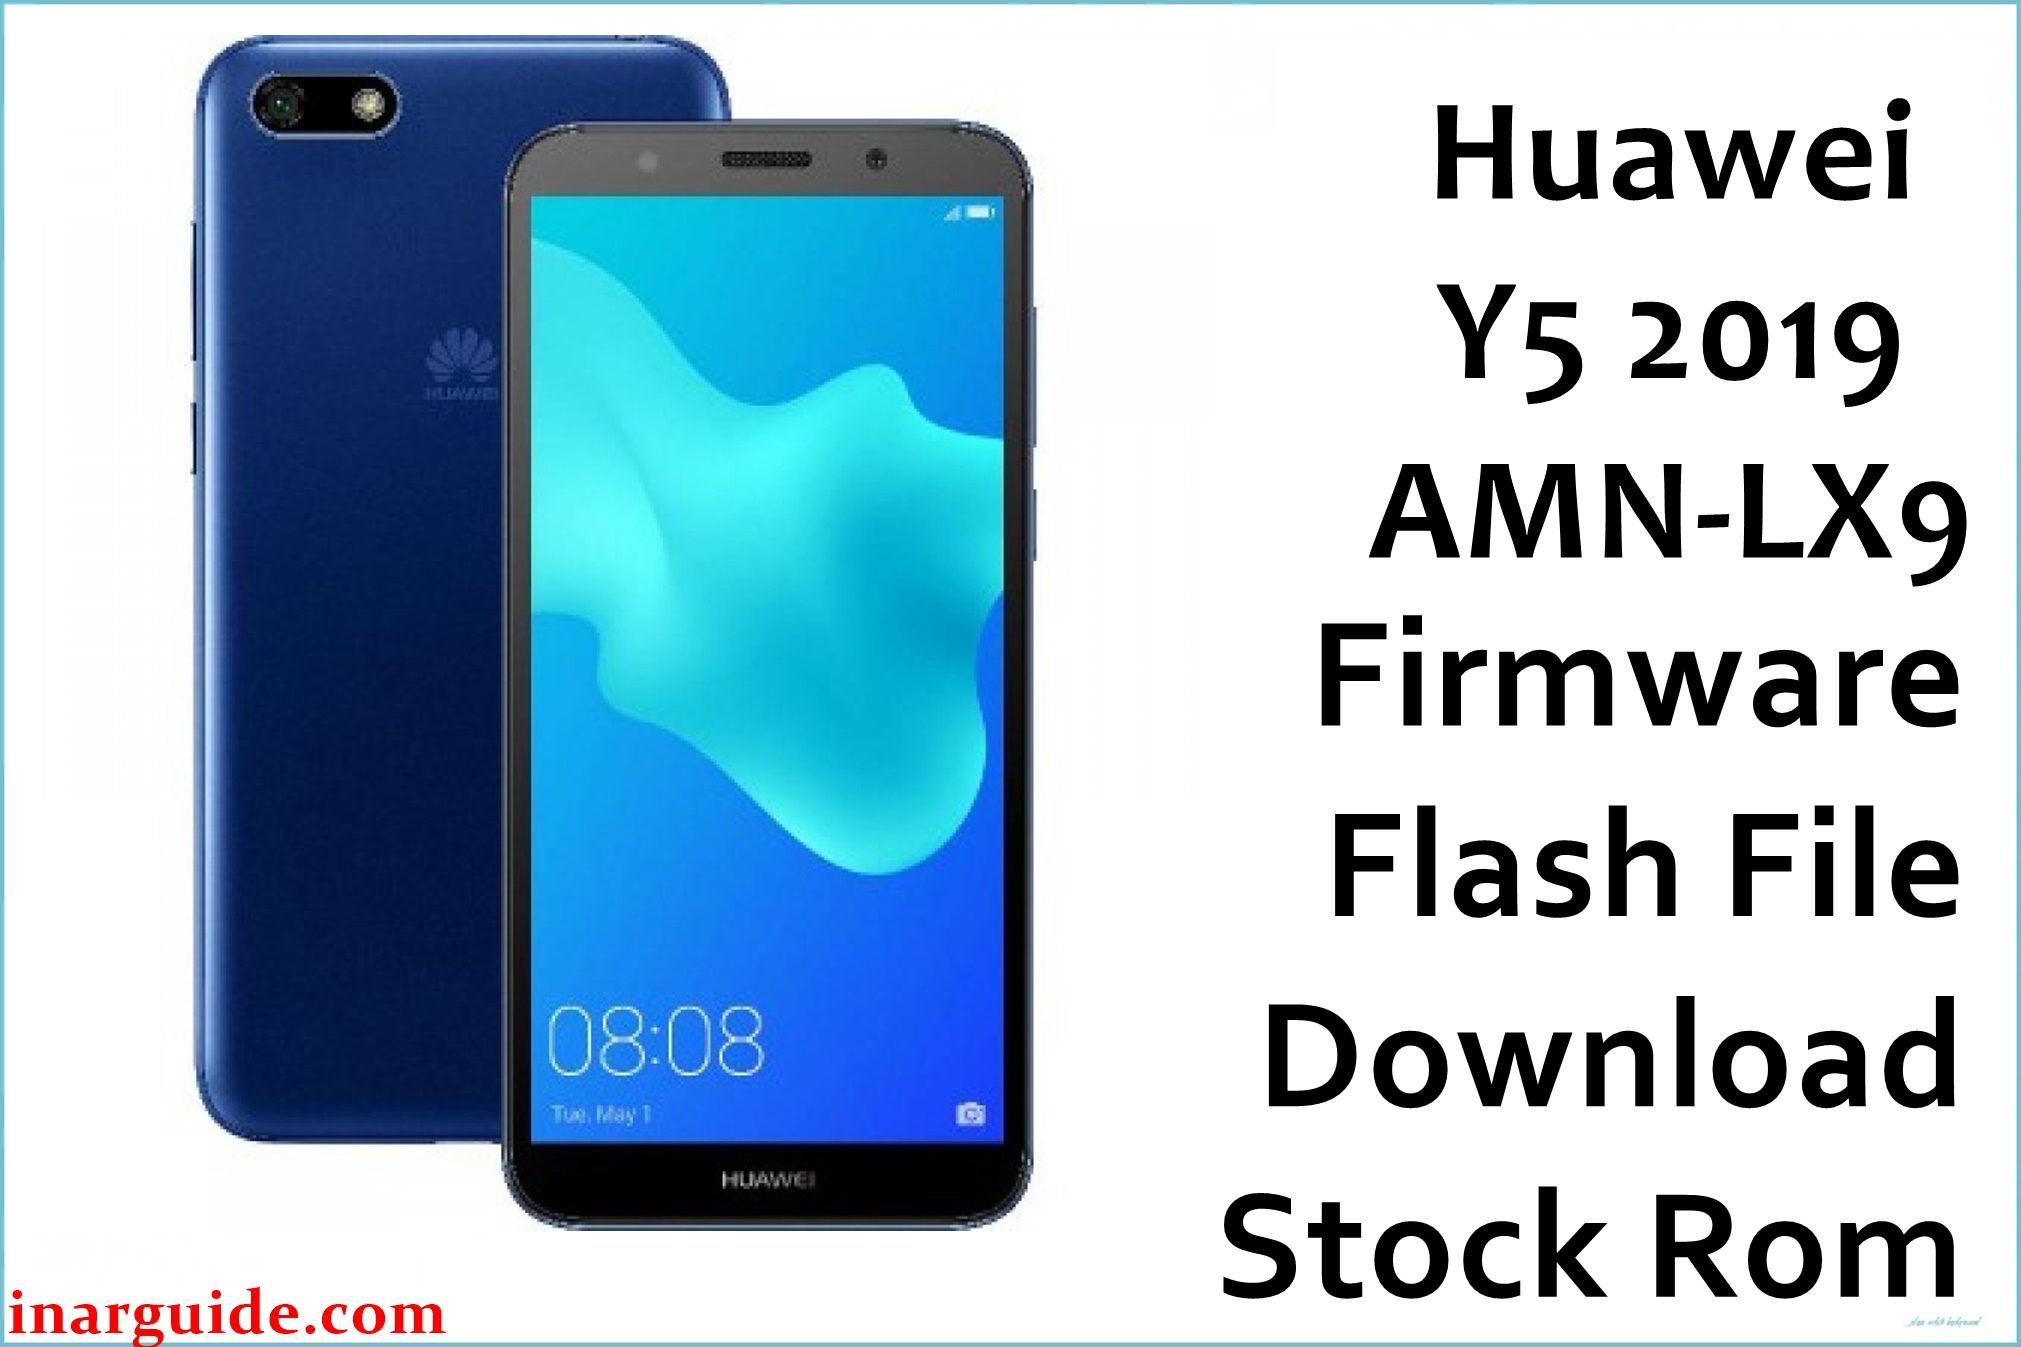 Huawei Y5 2019 AMN LX9